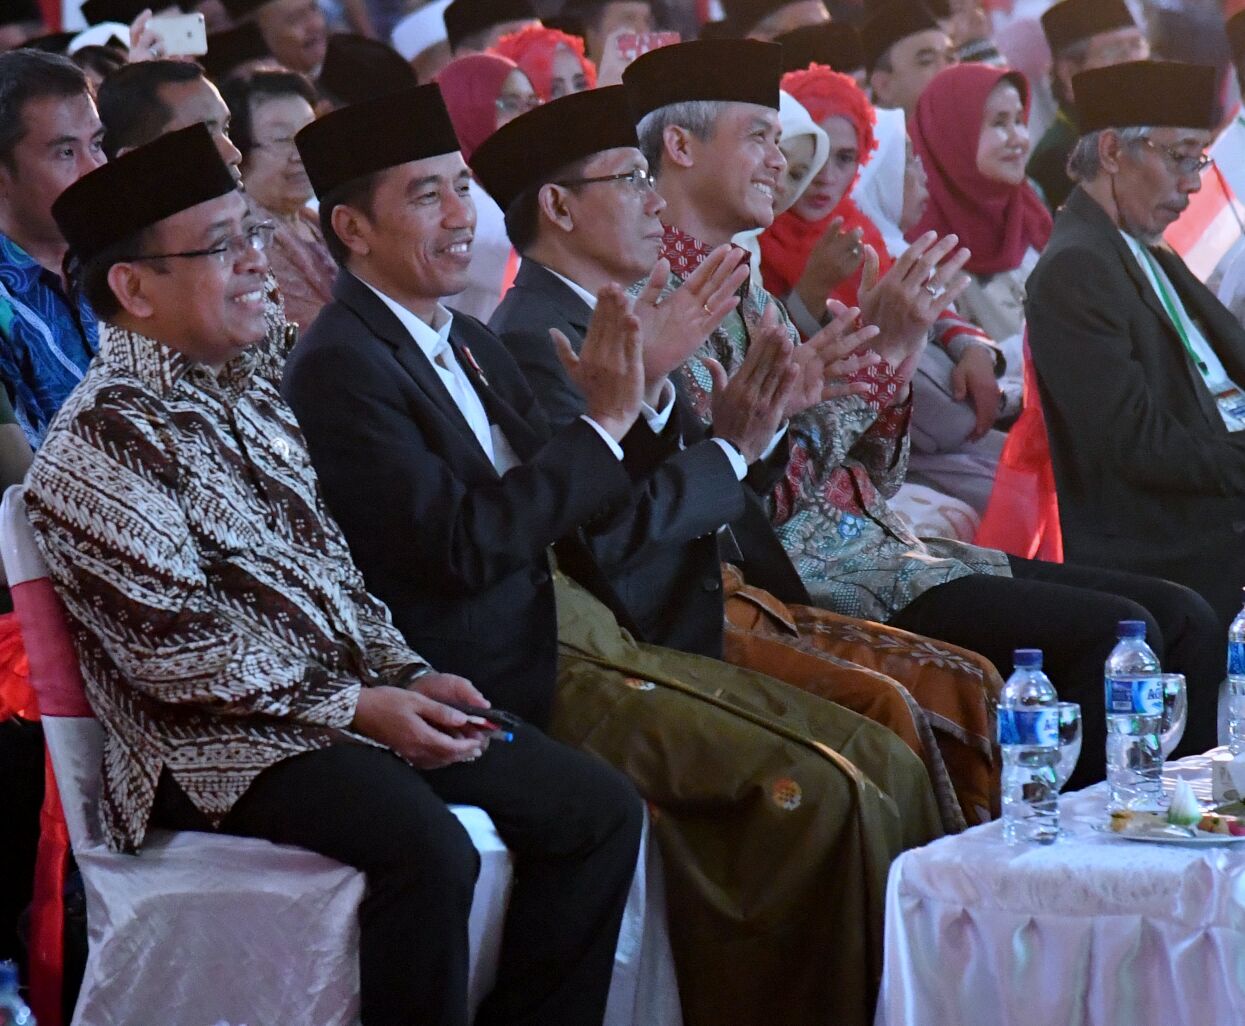 BERSARUNG: Presiden Jokowi menghadiri acara Halal bi Halal NU Jateng dengan bersarung. (Foto Biro Pers/Setpres)